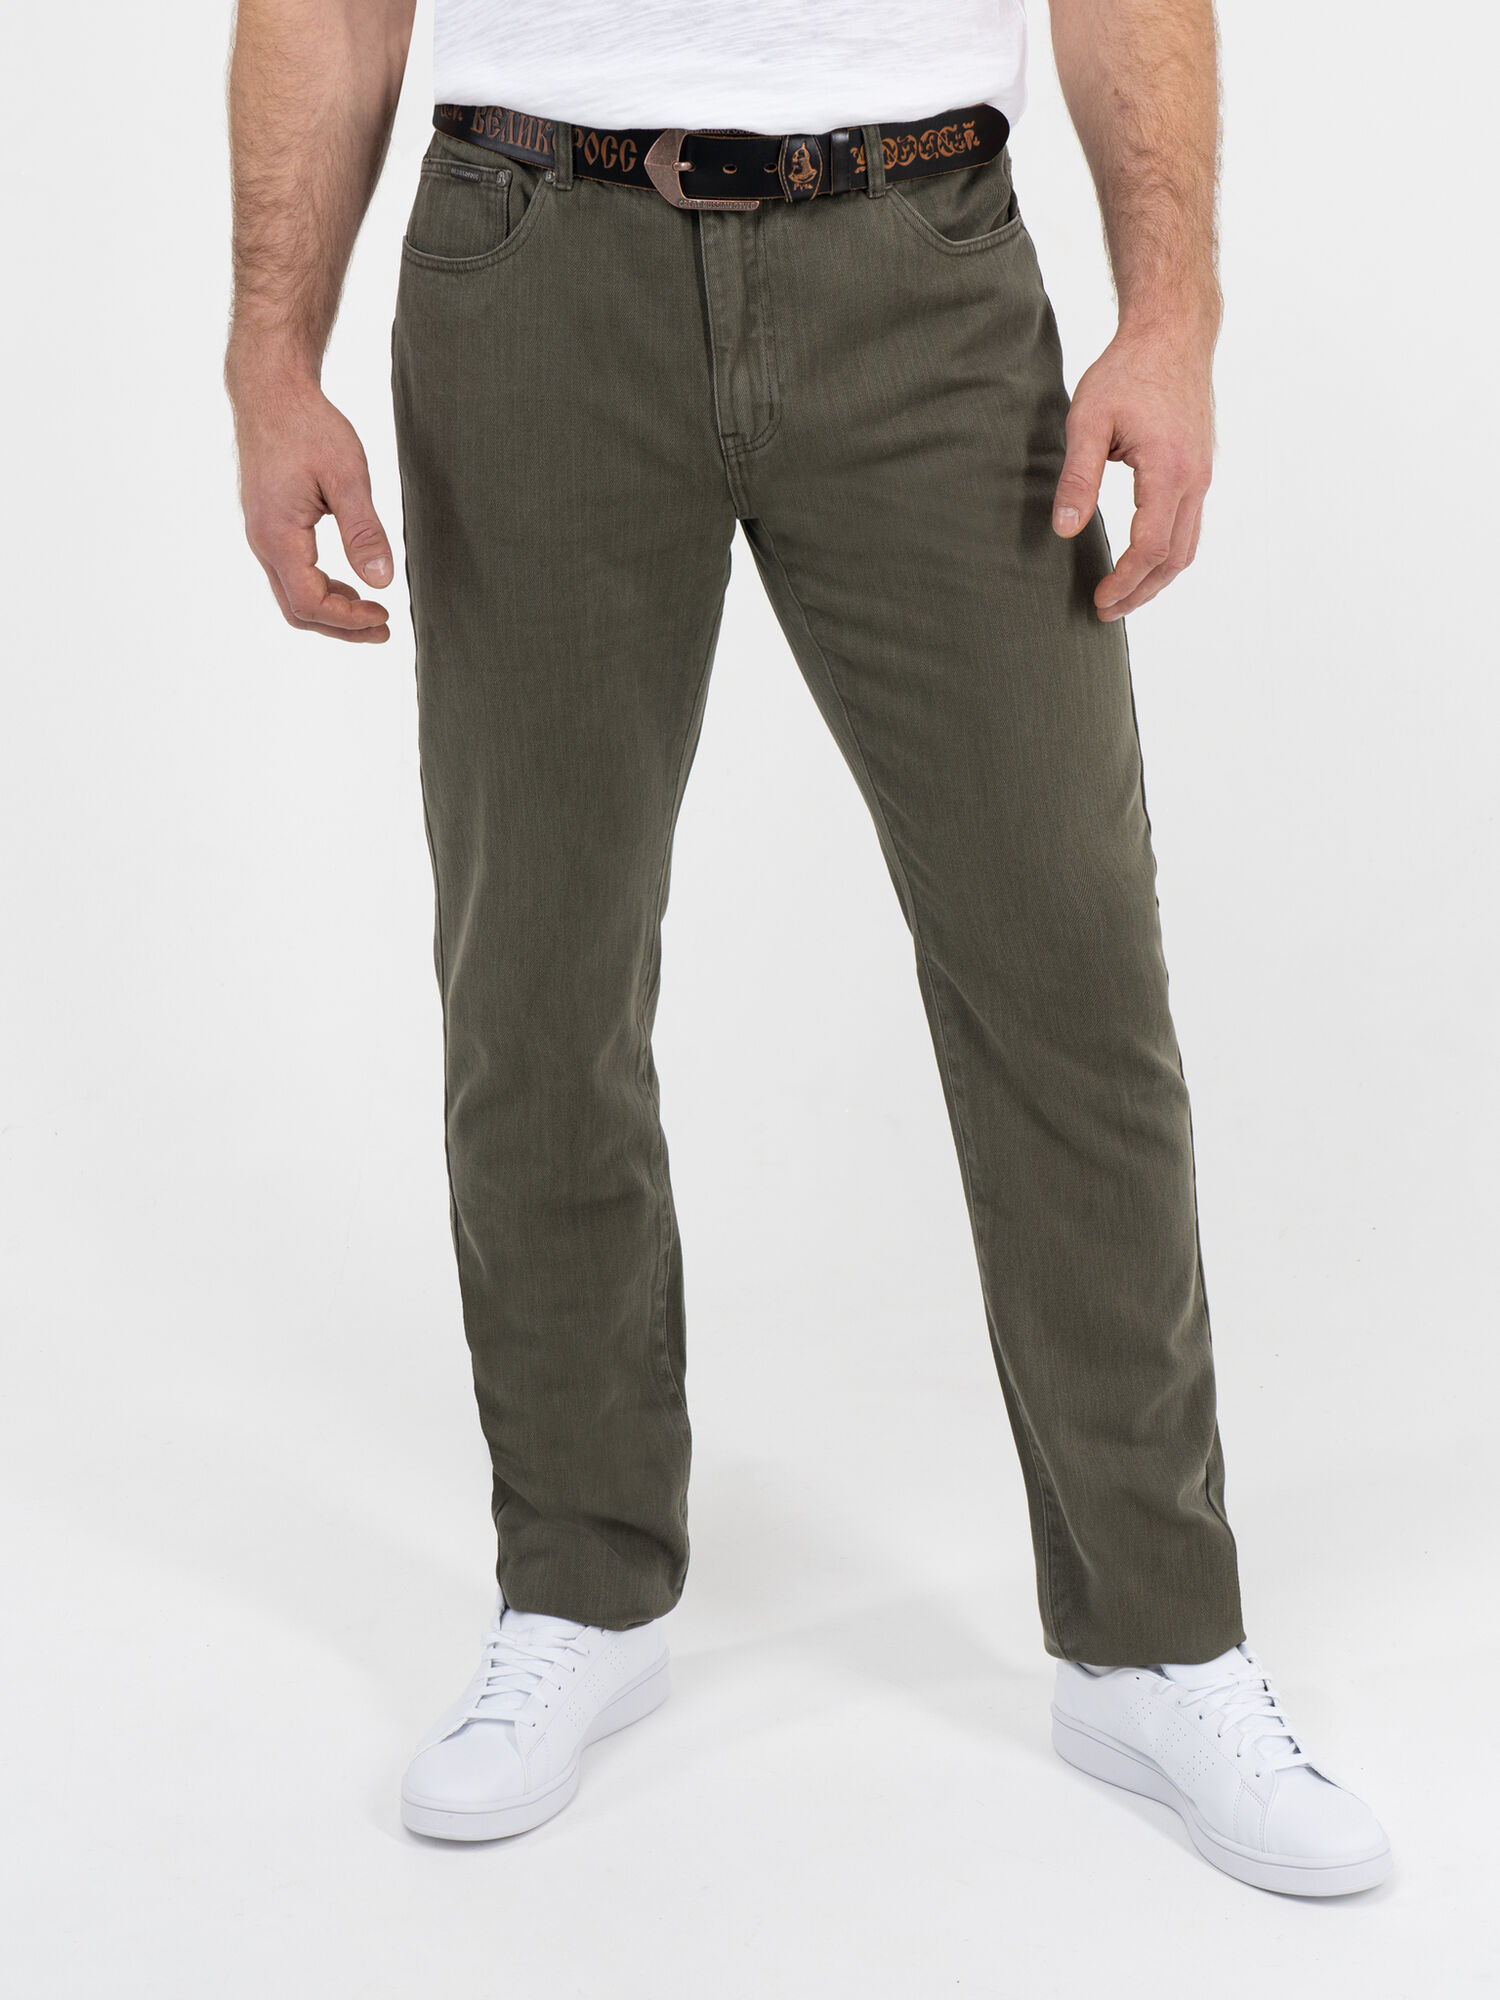 Плотные джинсы стального серого цвета из 100%-ного премиального хлопка